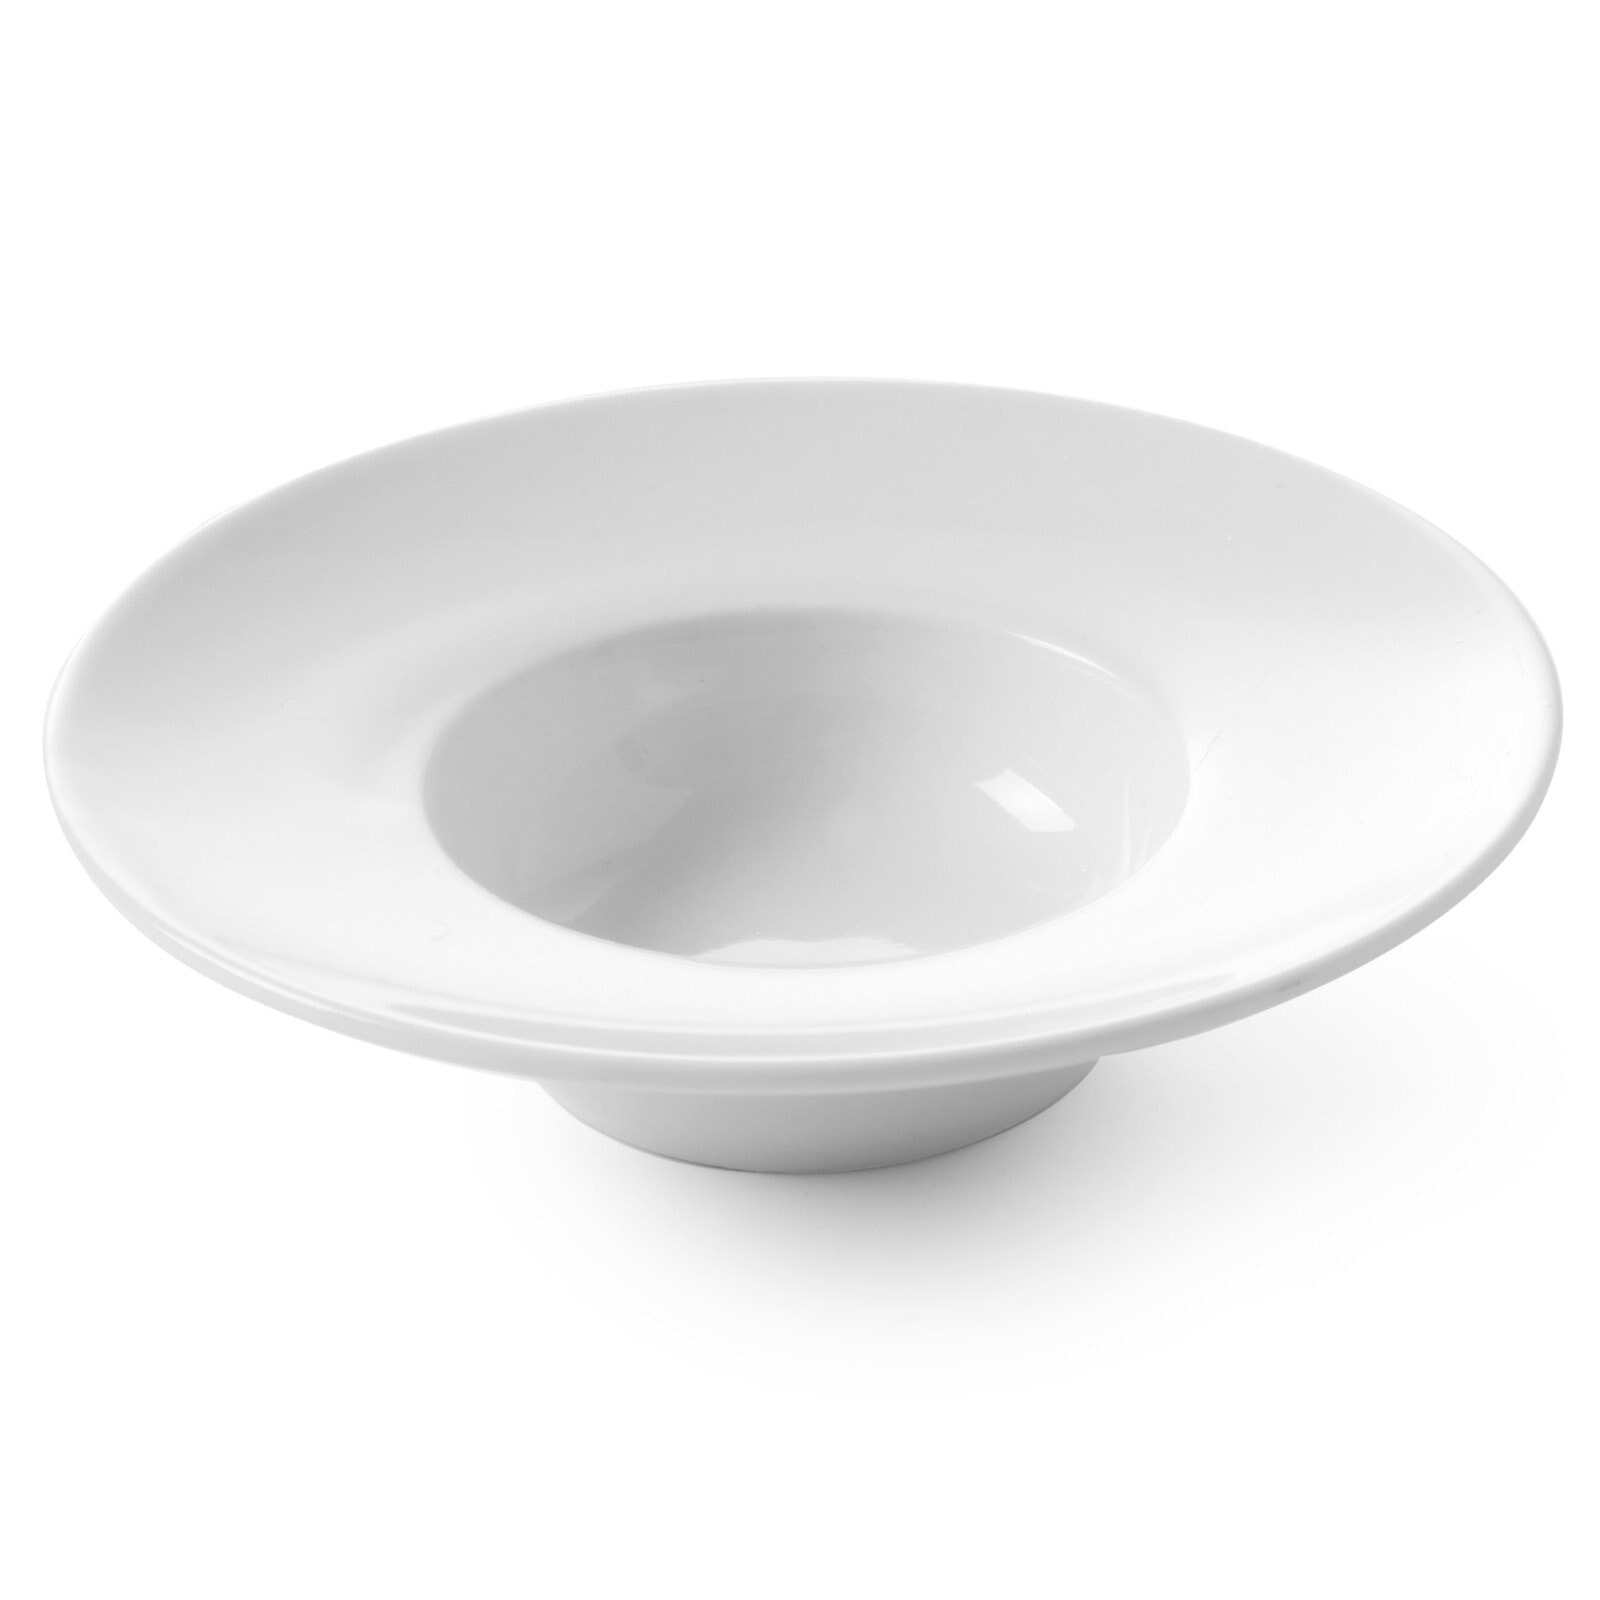 Snack bowl Plato TAPAS MINI porcelain set of 6 pcs. - Hendi 784426